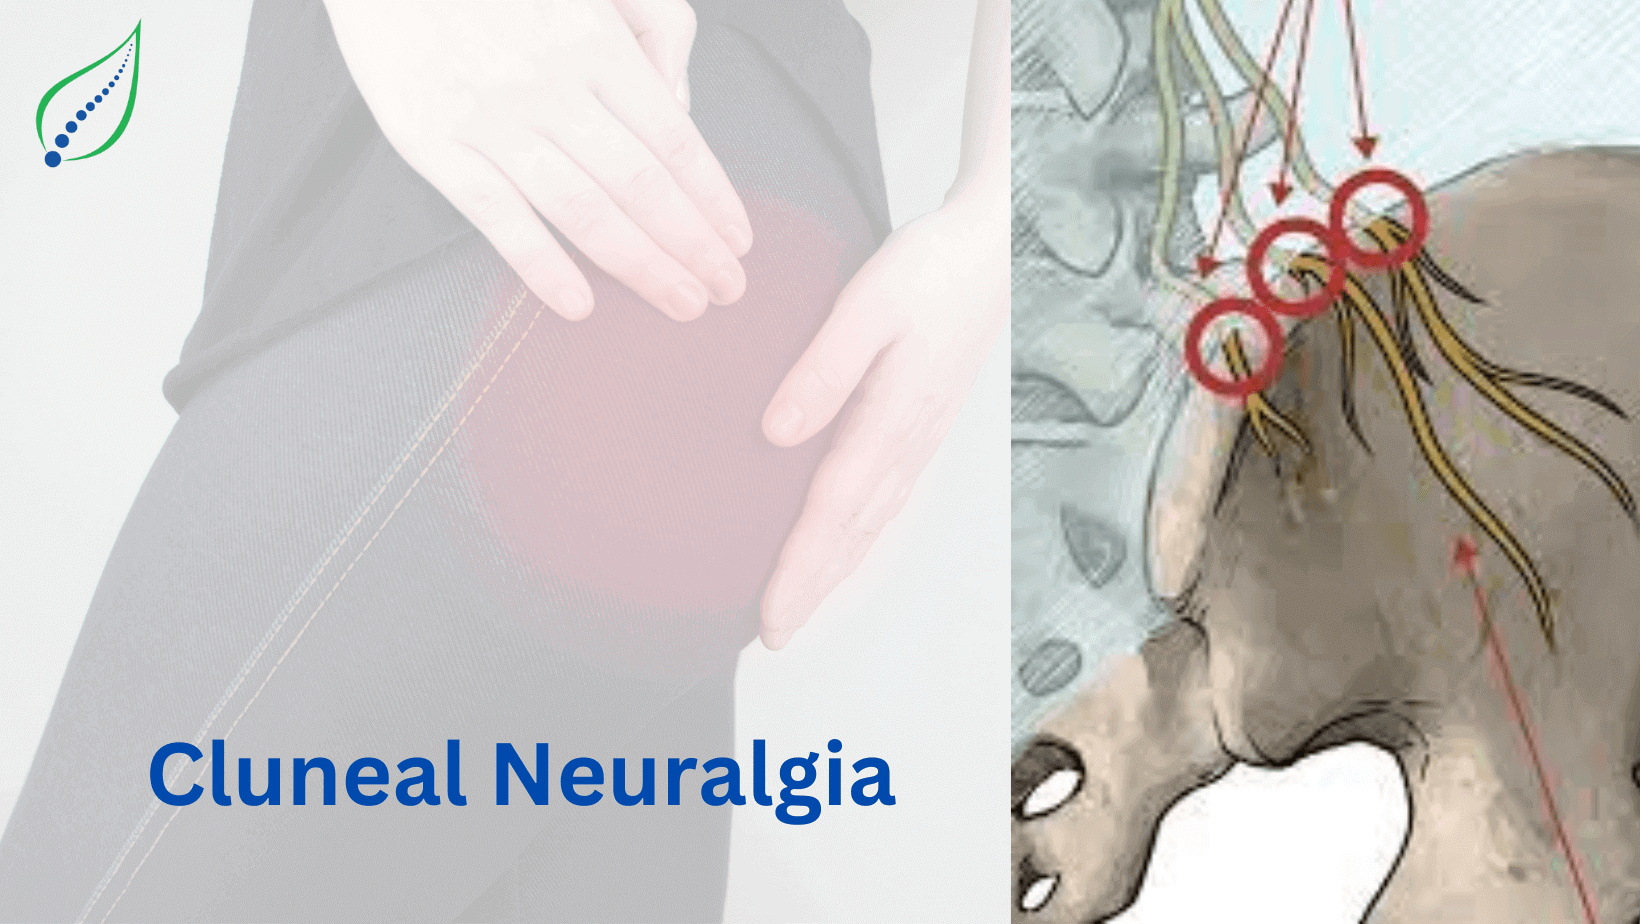 cluneal-neuralgia